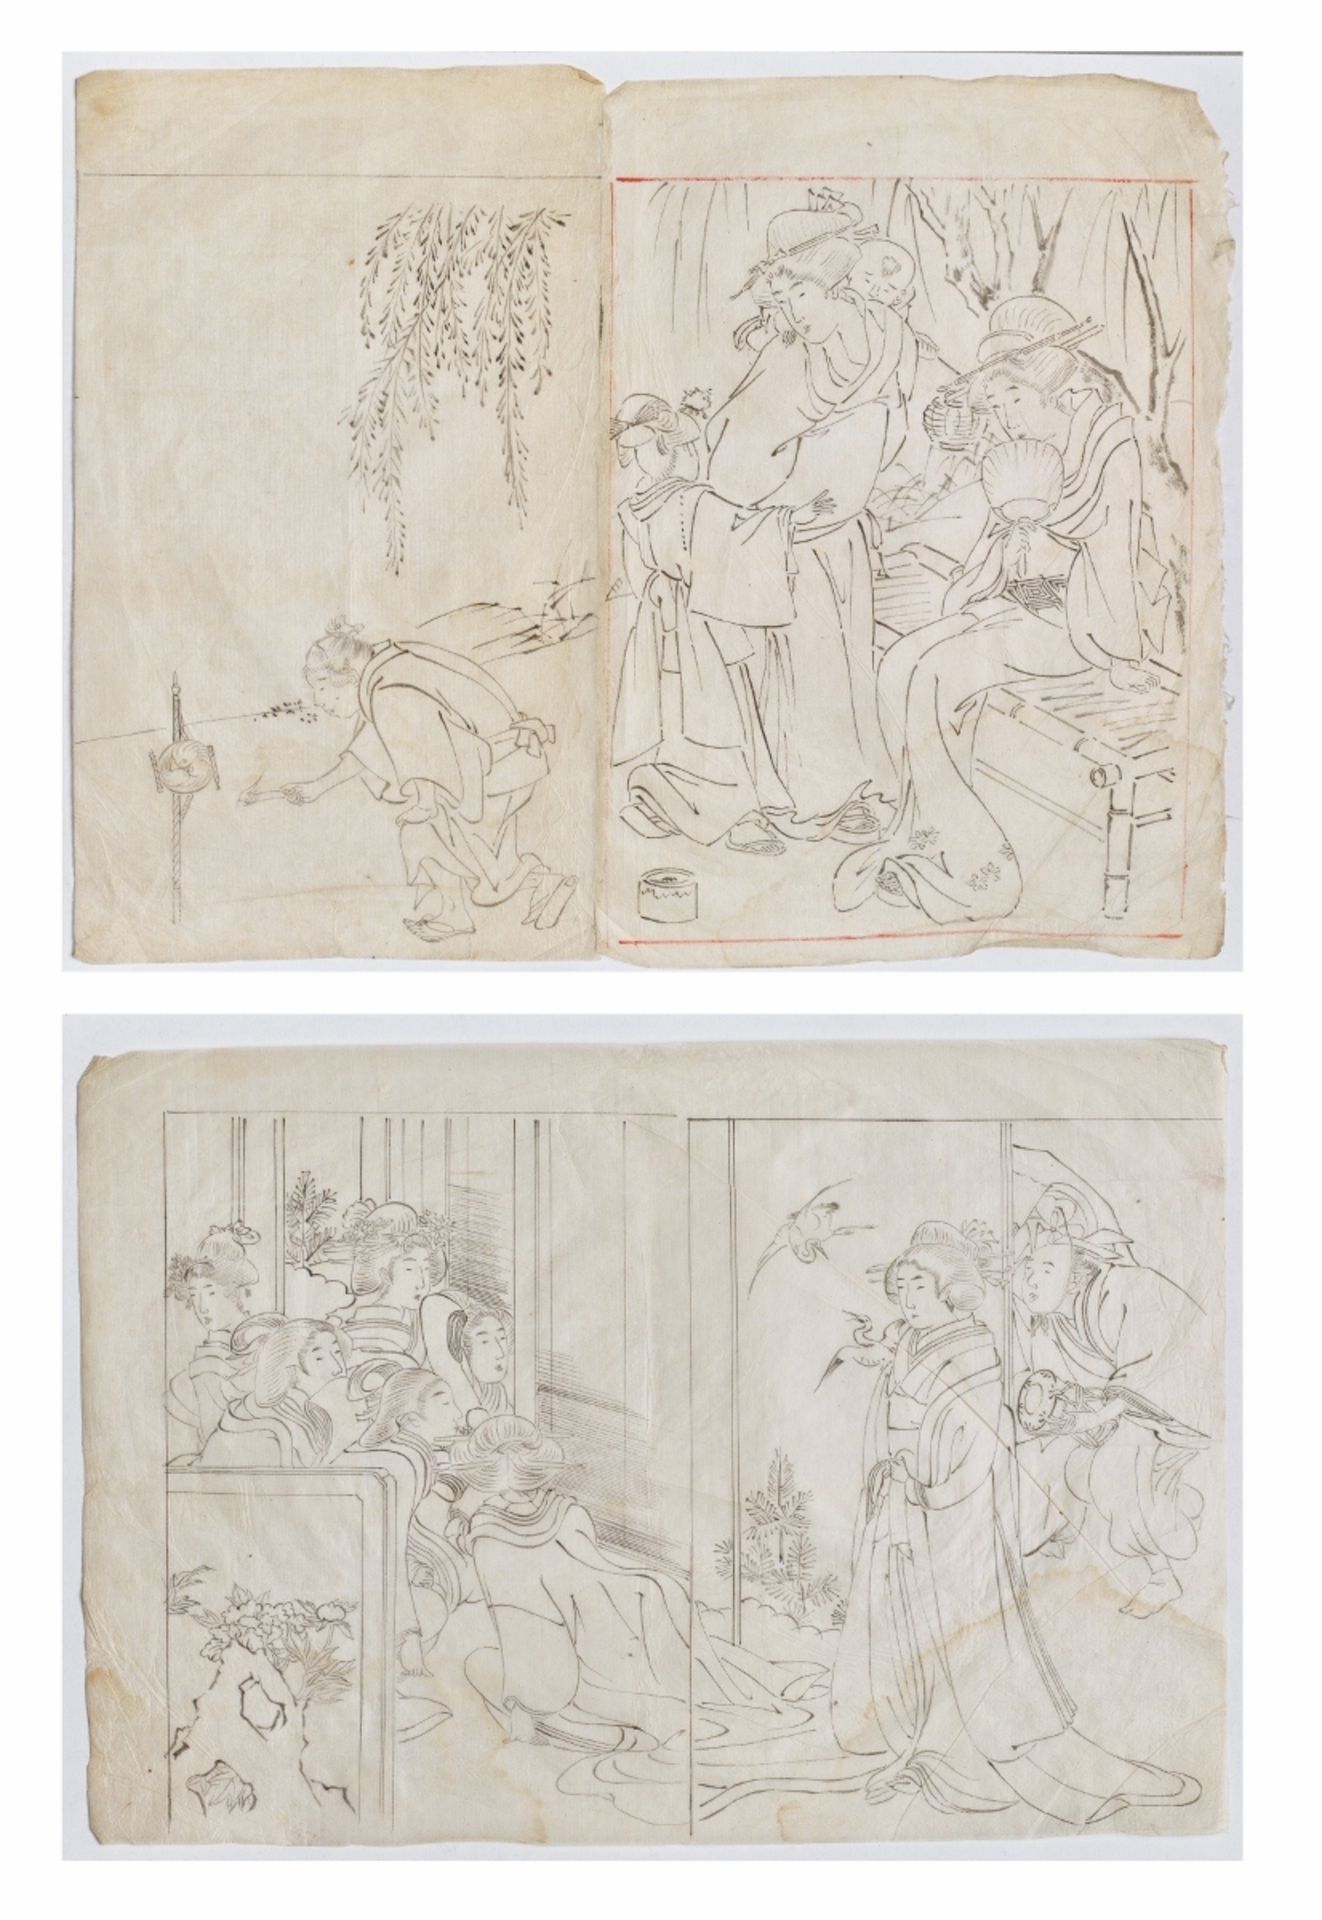 KITAGAWA UTAMARO (1750 - 1806): ZWEI HANDZEICHNUNGENTusche auf Papier. Japan, 2. Hälfte 18. Jh.